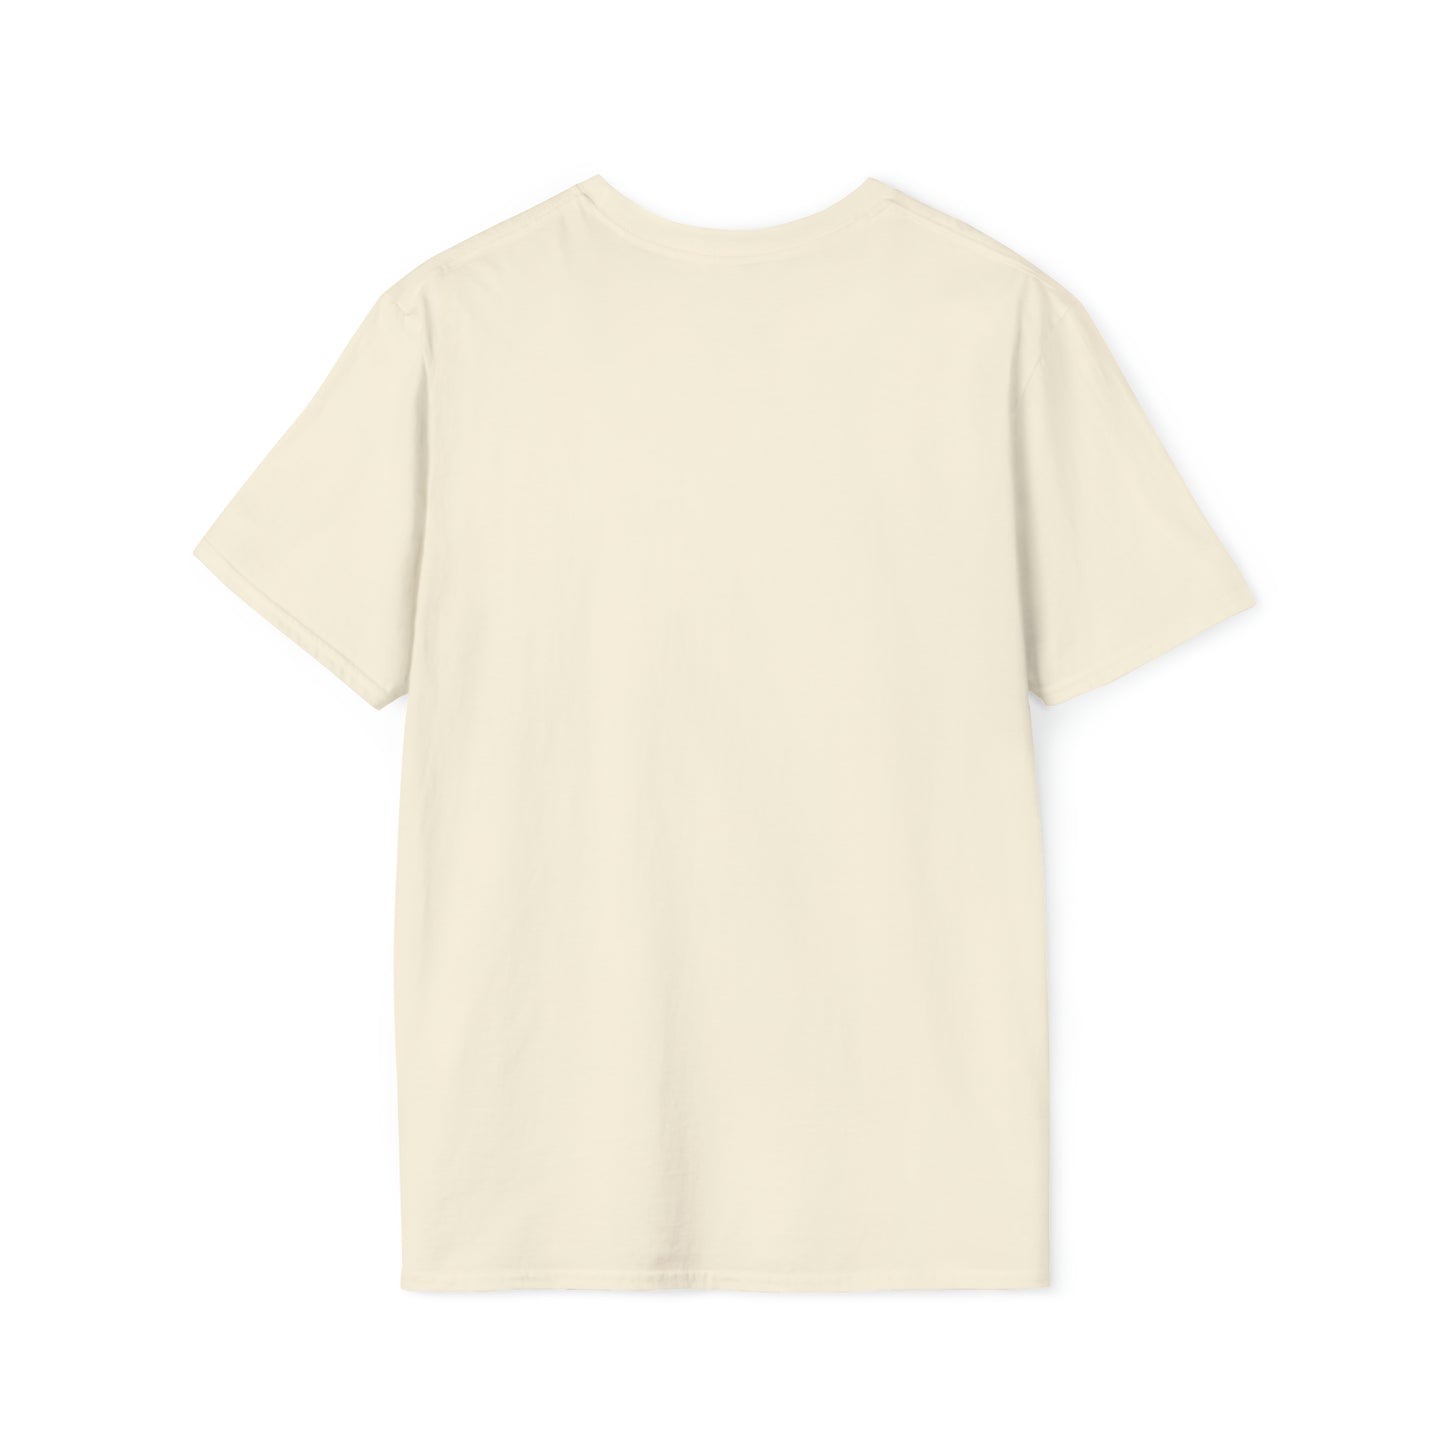 CHUN-LI Unisex Softstyle T-Shirt